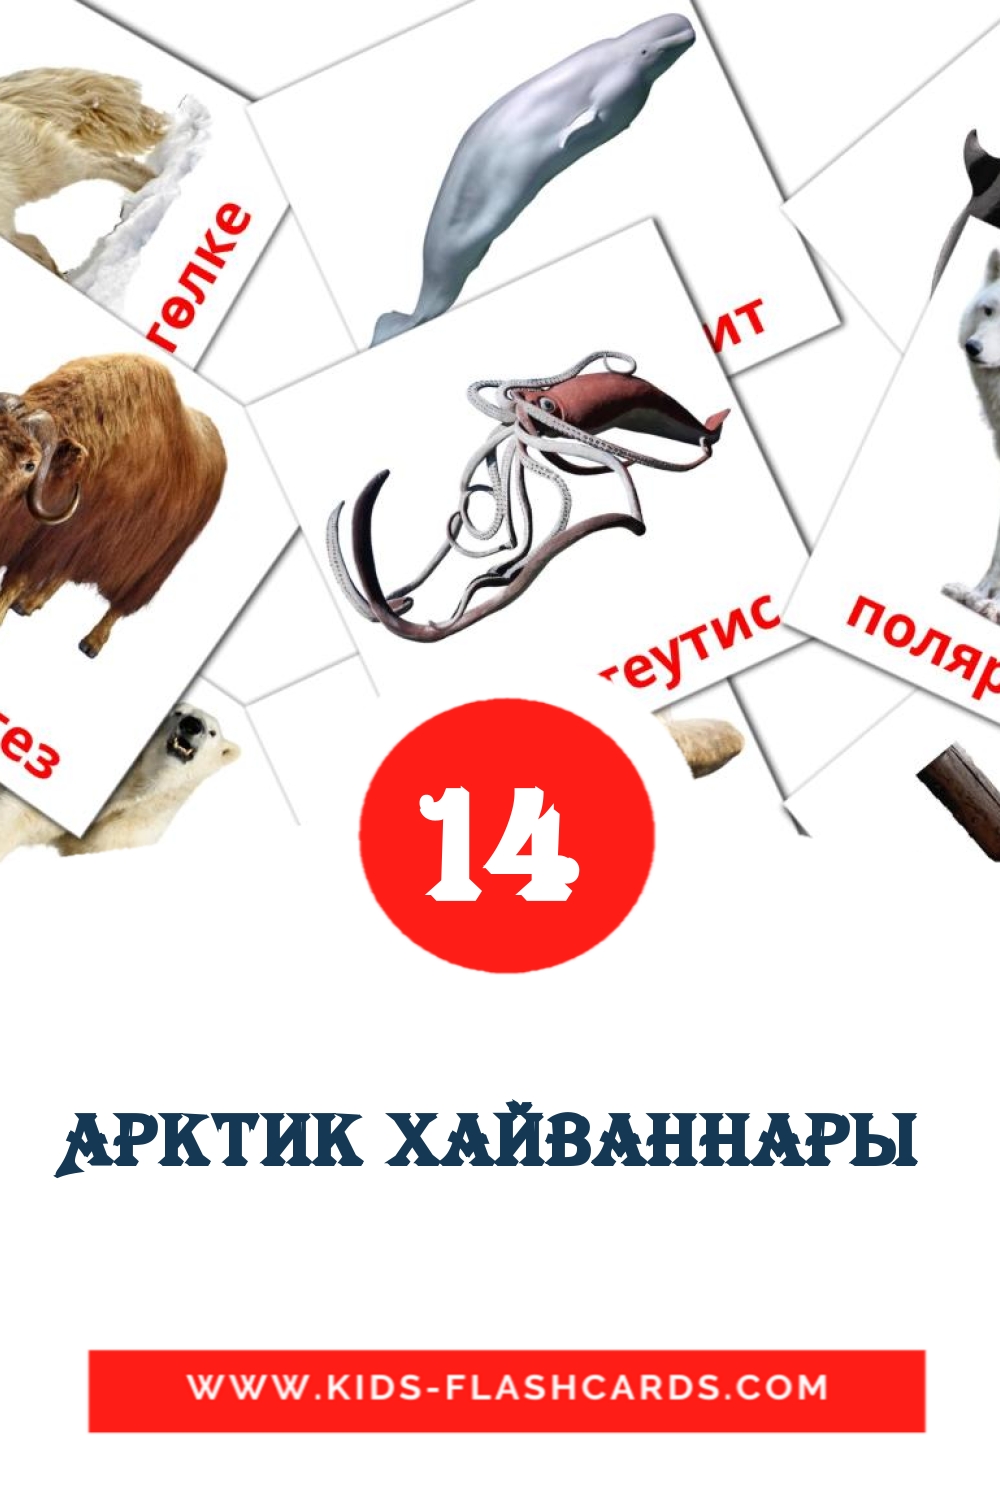 14 Арктик хайваннары  Bildkarten für den Kindergarten auf Tatar